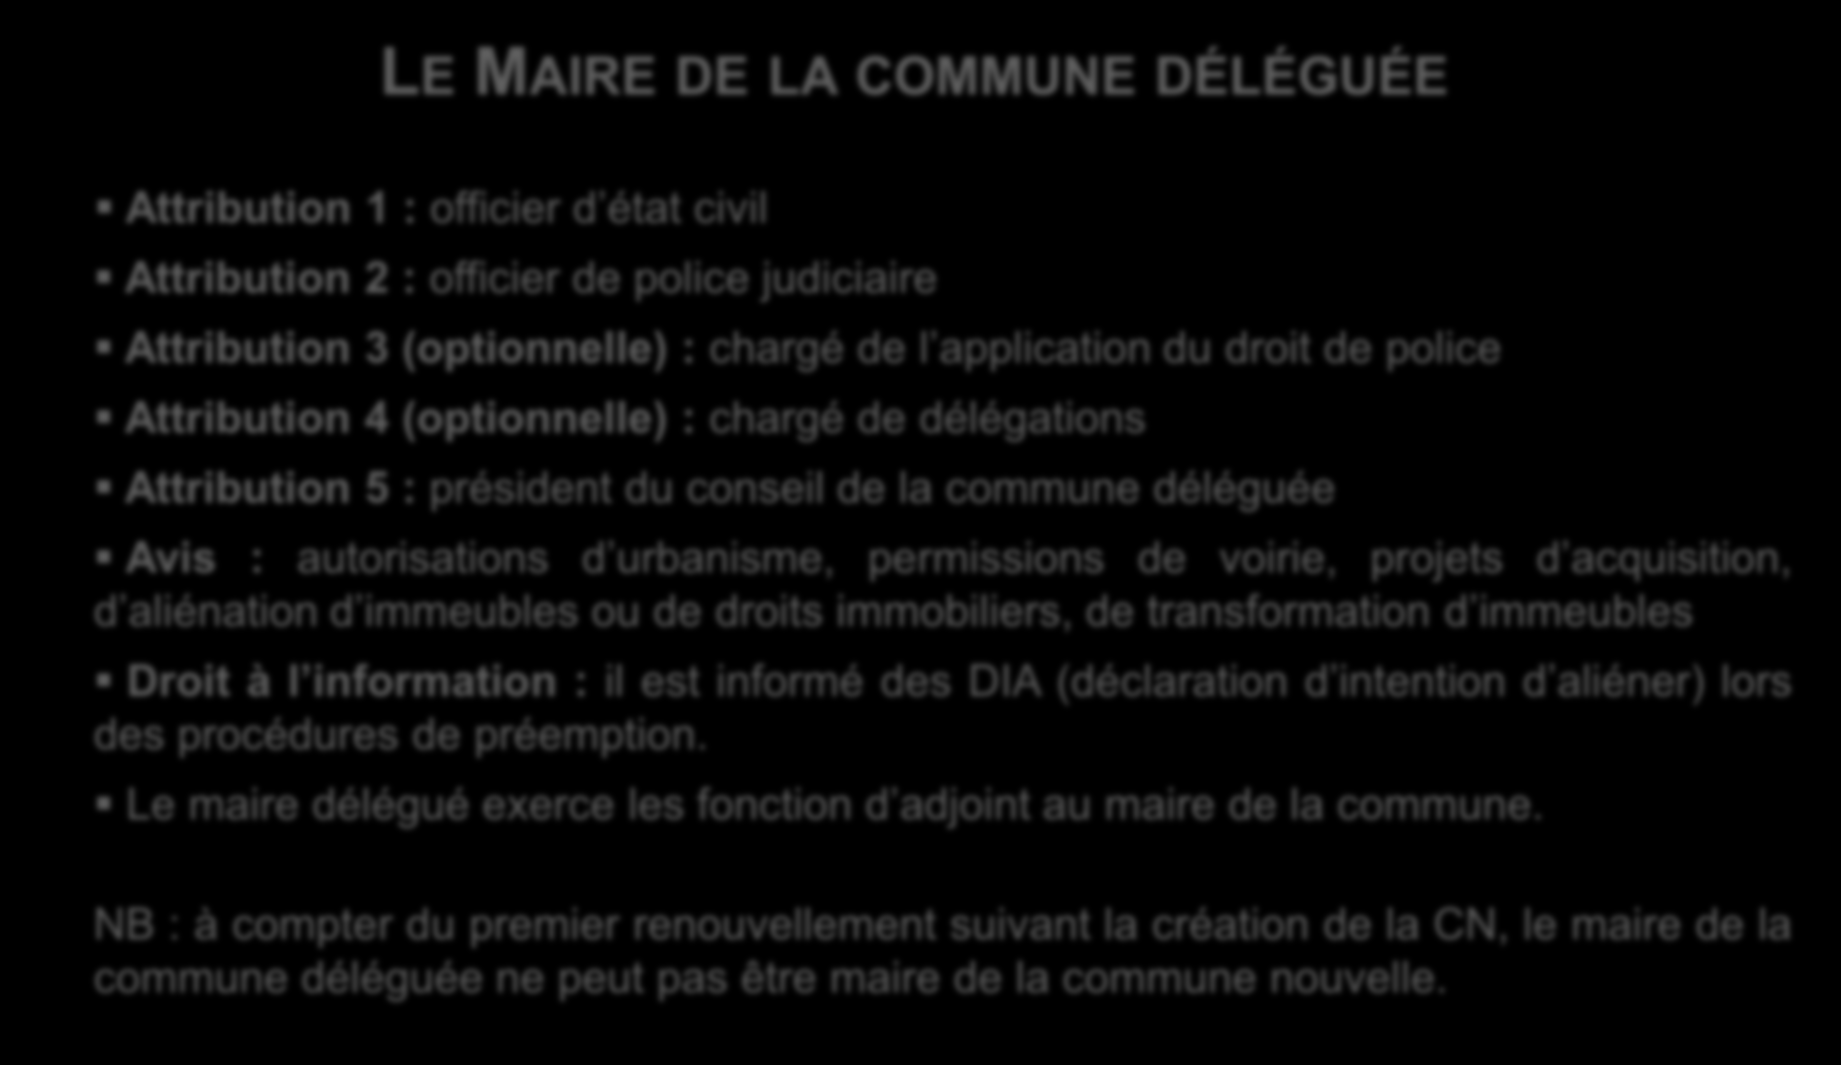 Le fonctionnement d une commune nouvelle La commune déléguée le Maire LE MAIRE DE LA COMMUNE DÉLÉGUÉE Attribution 1 : officier d état civil Attribution 2 : officier de police judiciaire Attribution 3